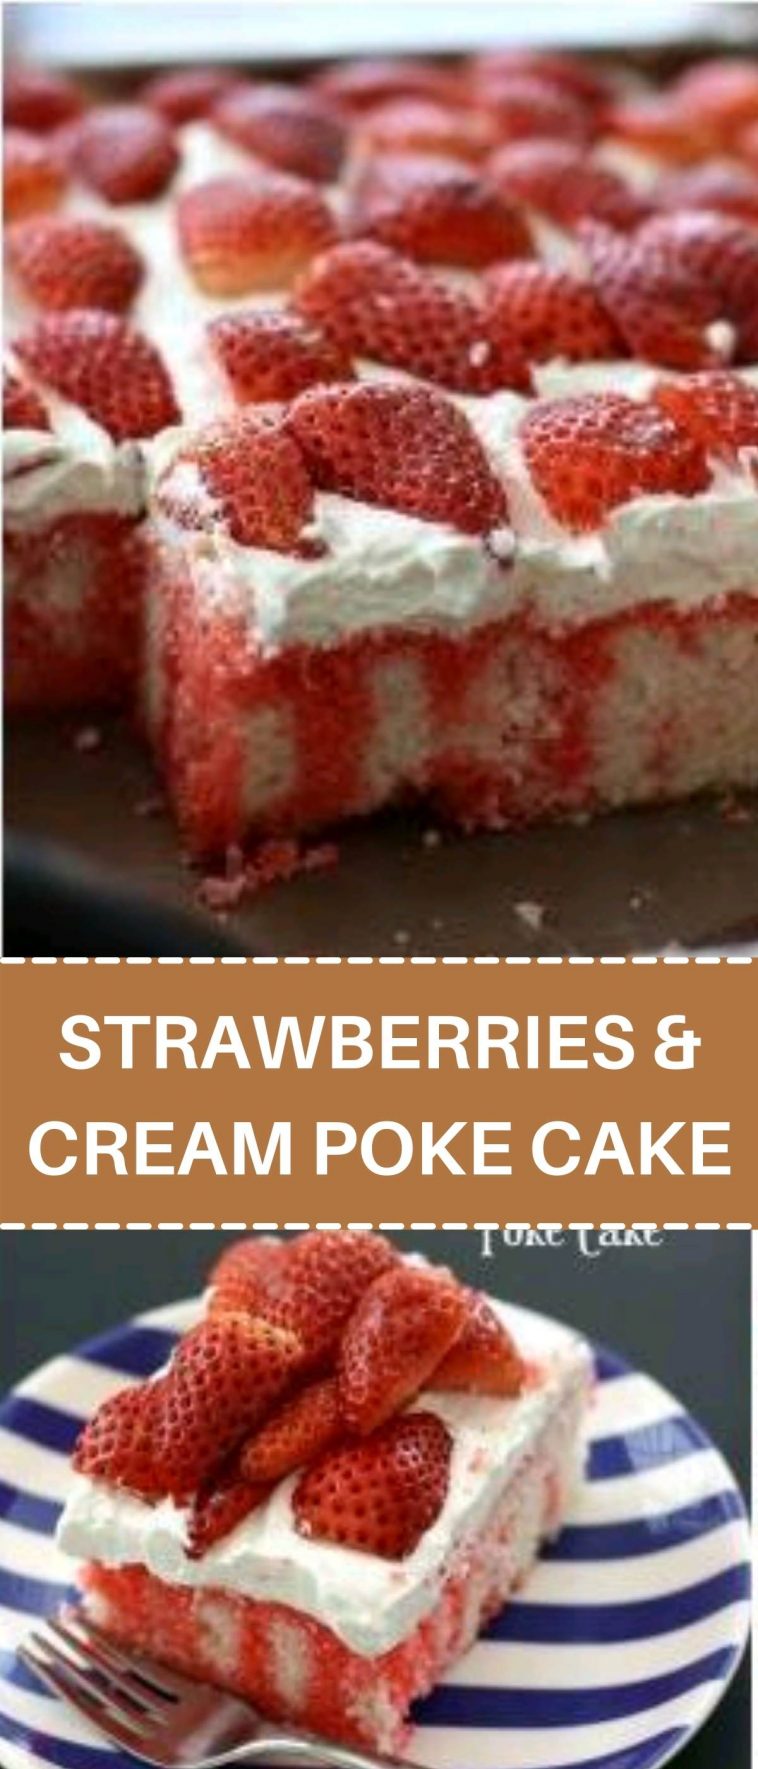 STRAWBERRIES & CREAM POKE CAKE